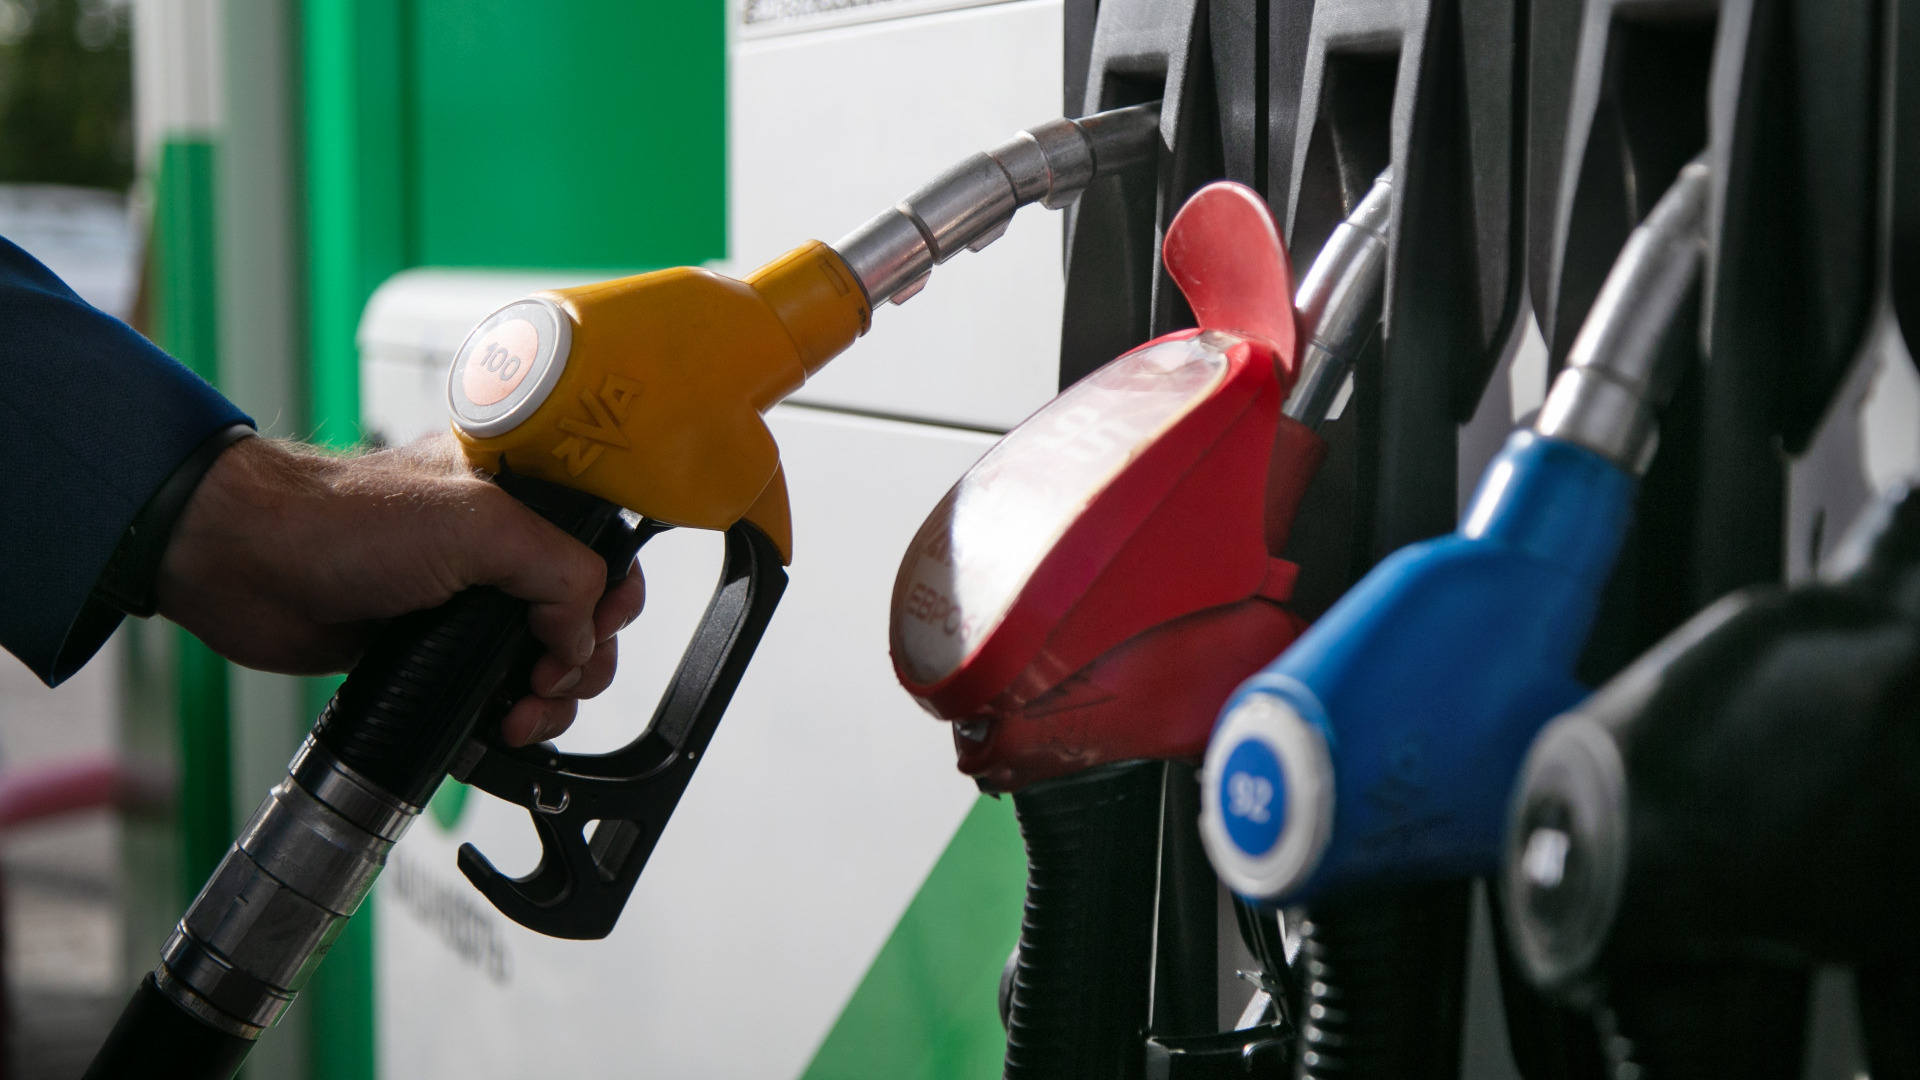 Новый скачок цен на бензин произошел в Волгограде